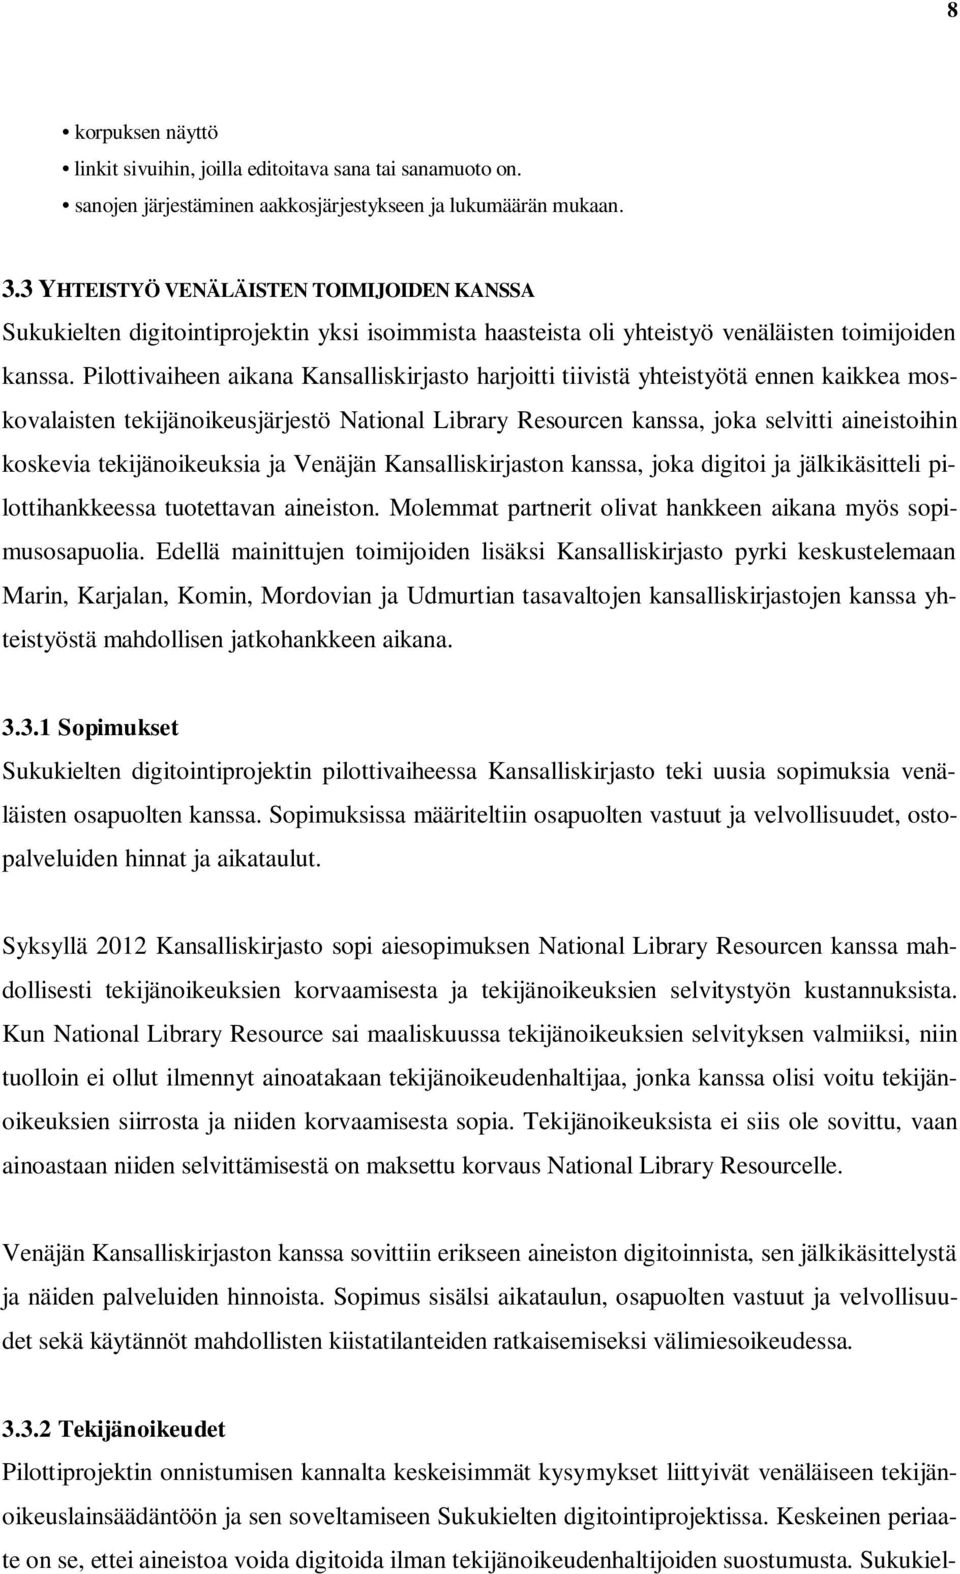 Pilottivaiheen aikana Kansalliskirjasto harjoitti tiivistä yhteistyötä ennen kaikkea moskovalaisten tekijänoikeusjärjestö National Library Resourcen kanssa, joka selvitti aineistoihin koskevia